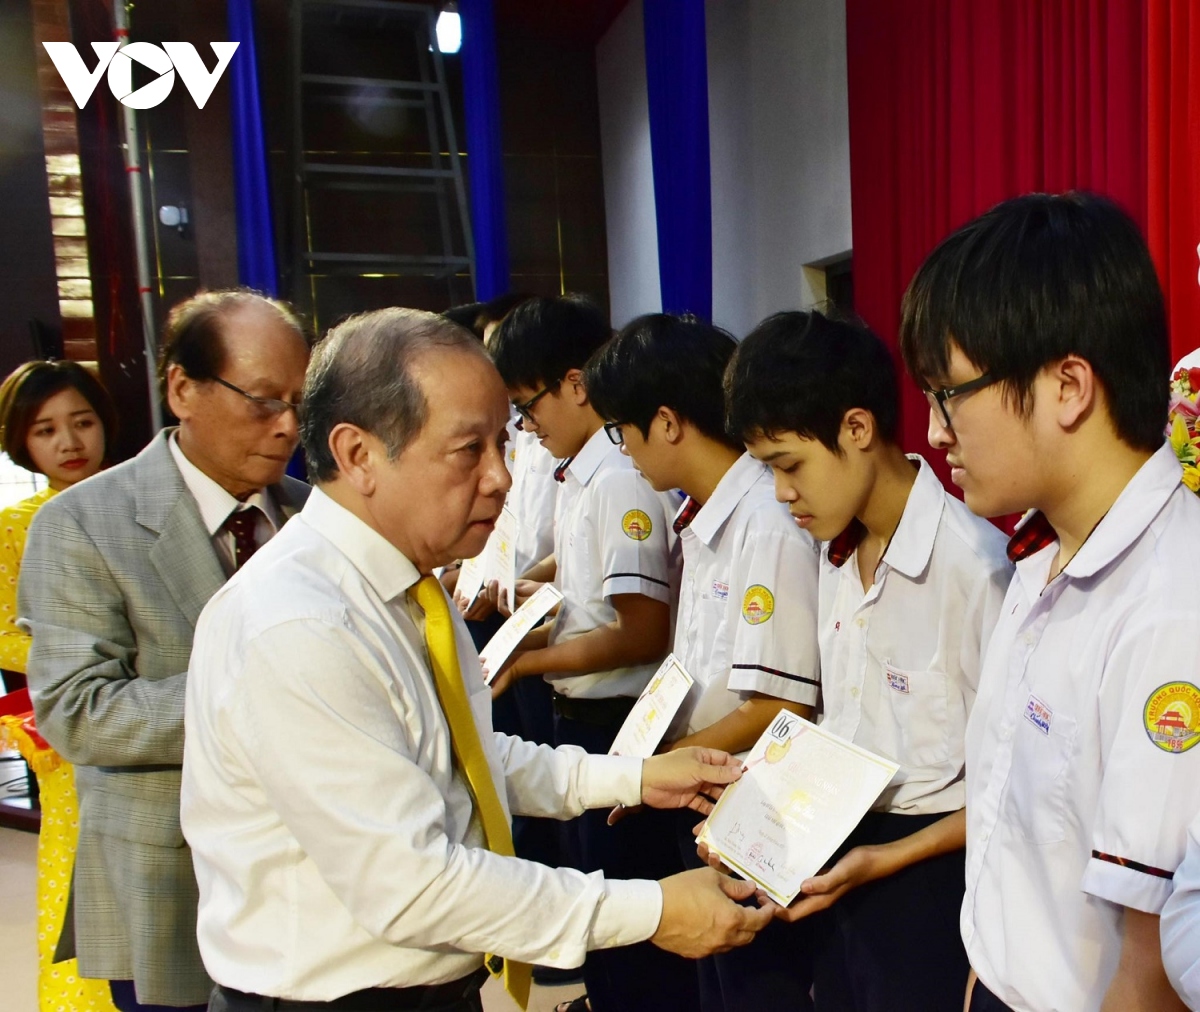 Hơn 200 học sinh, sinh viên xuất sắc nhận học bổng Vallet tại Thừa Thiên Huế